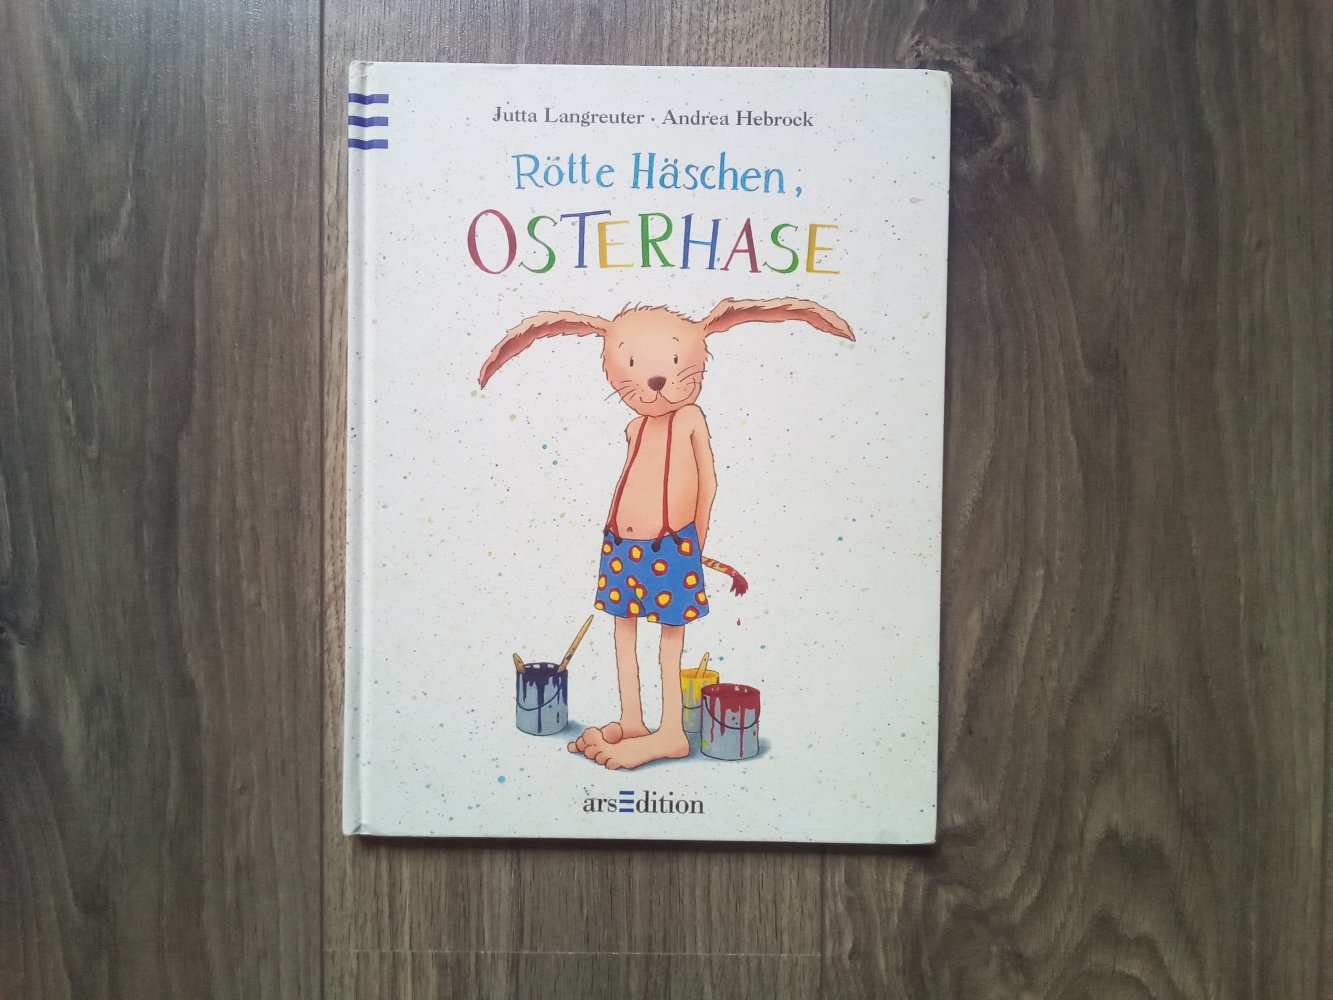 Rötte Häschen, Osterhase ars edition Bilderbuch Jutta Langreuter